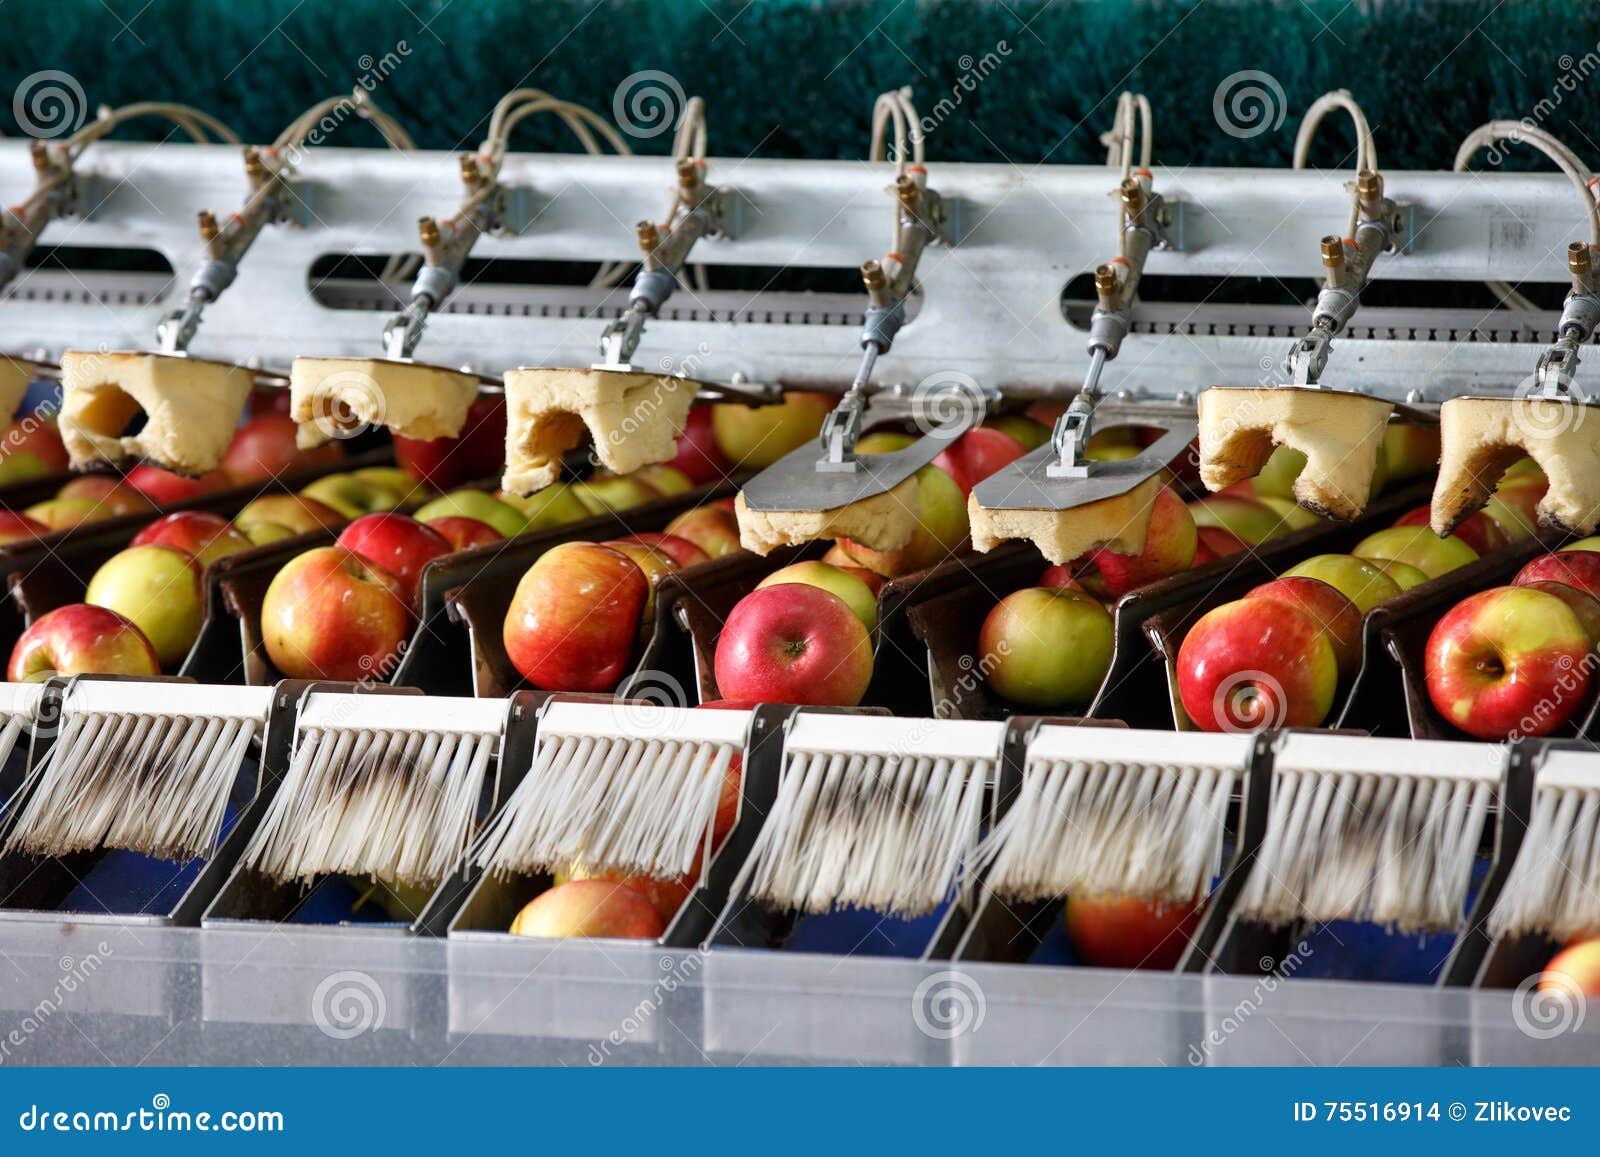 Manzanas Limpias Frescas En La Banda Transportadora archivo - de consumerismo, alimento: 75516914